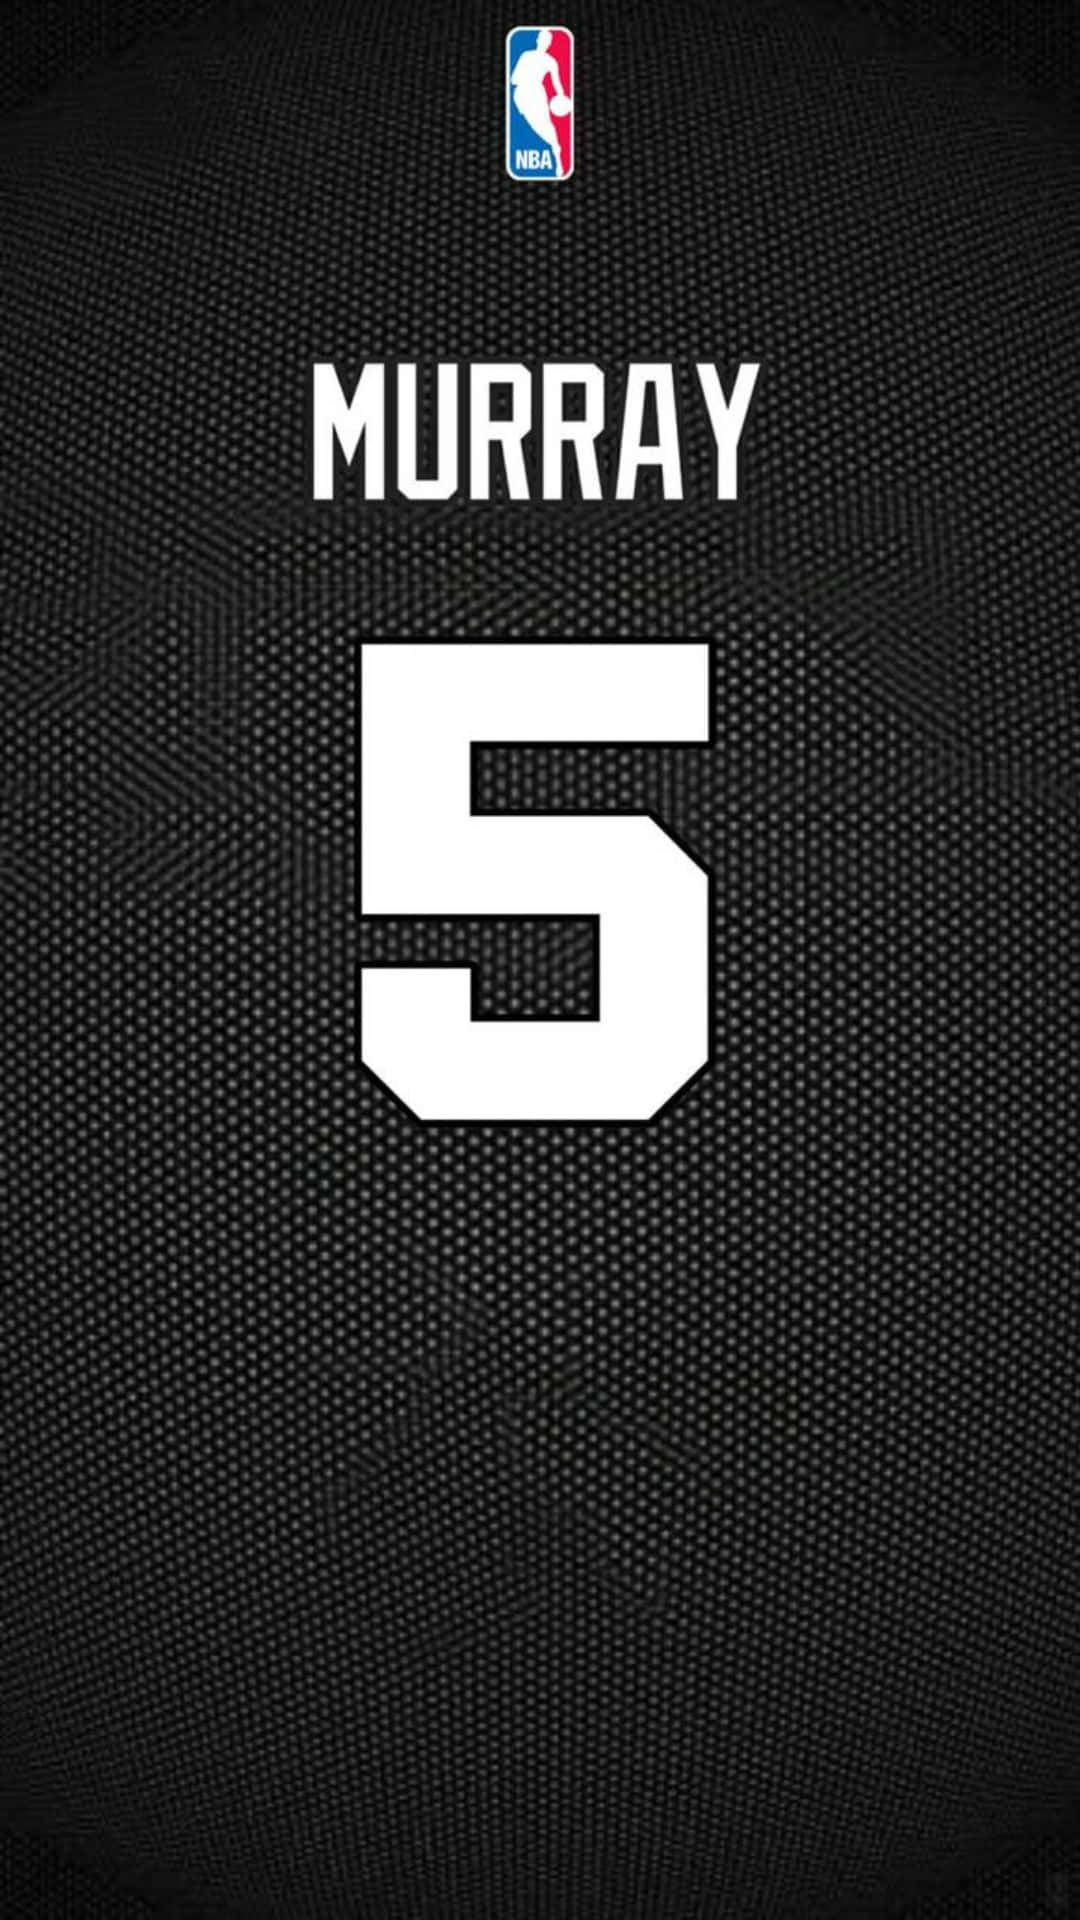 Murray Number5 N B A Jersey Design Wallpaper